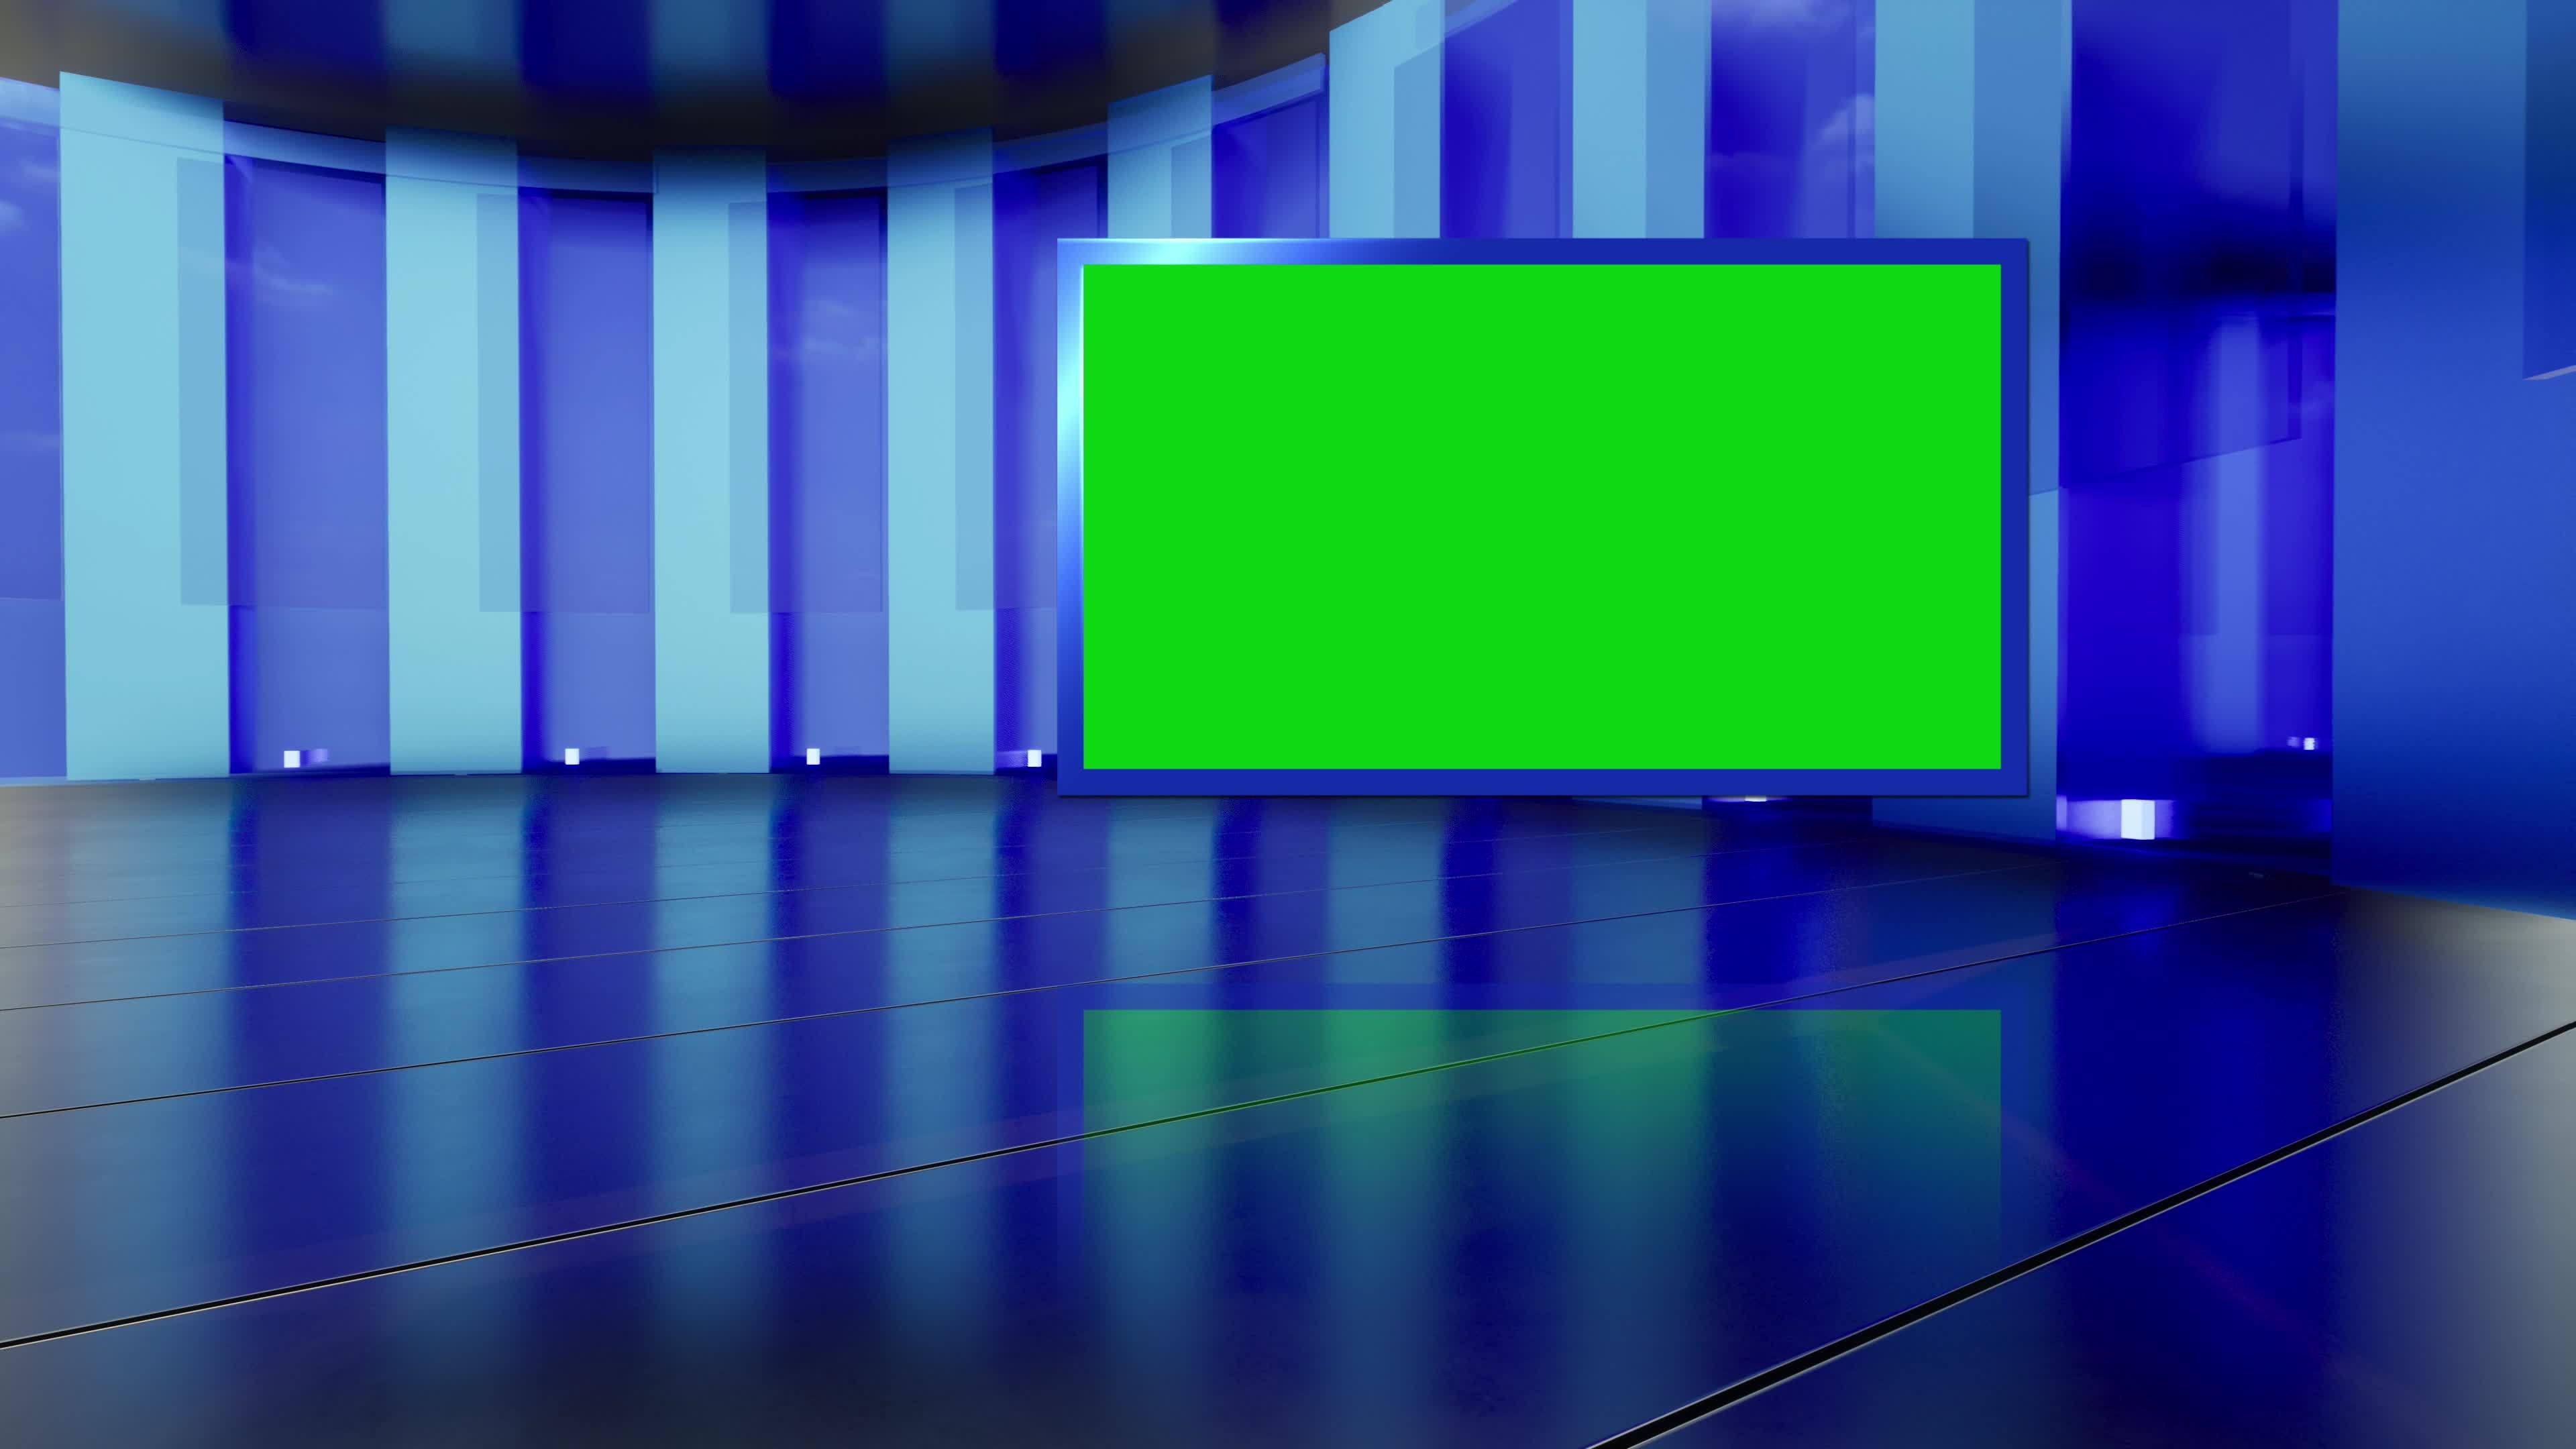 Phim nền video tin tức green screen giúp bạn thêm chân thực và chuyên nghiệp cho các bài phát thanh hoặc trang tin tức của bạn. Các video chất lượng cao sẽ giúp cho các dự án của bạn trở nên chuyên nghiệp hơn. Hãy thử sức với các hình nền green screen tin tức để nâng cao khả năng sáng tạo của bạn.